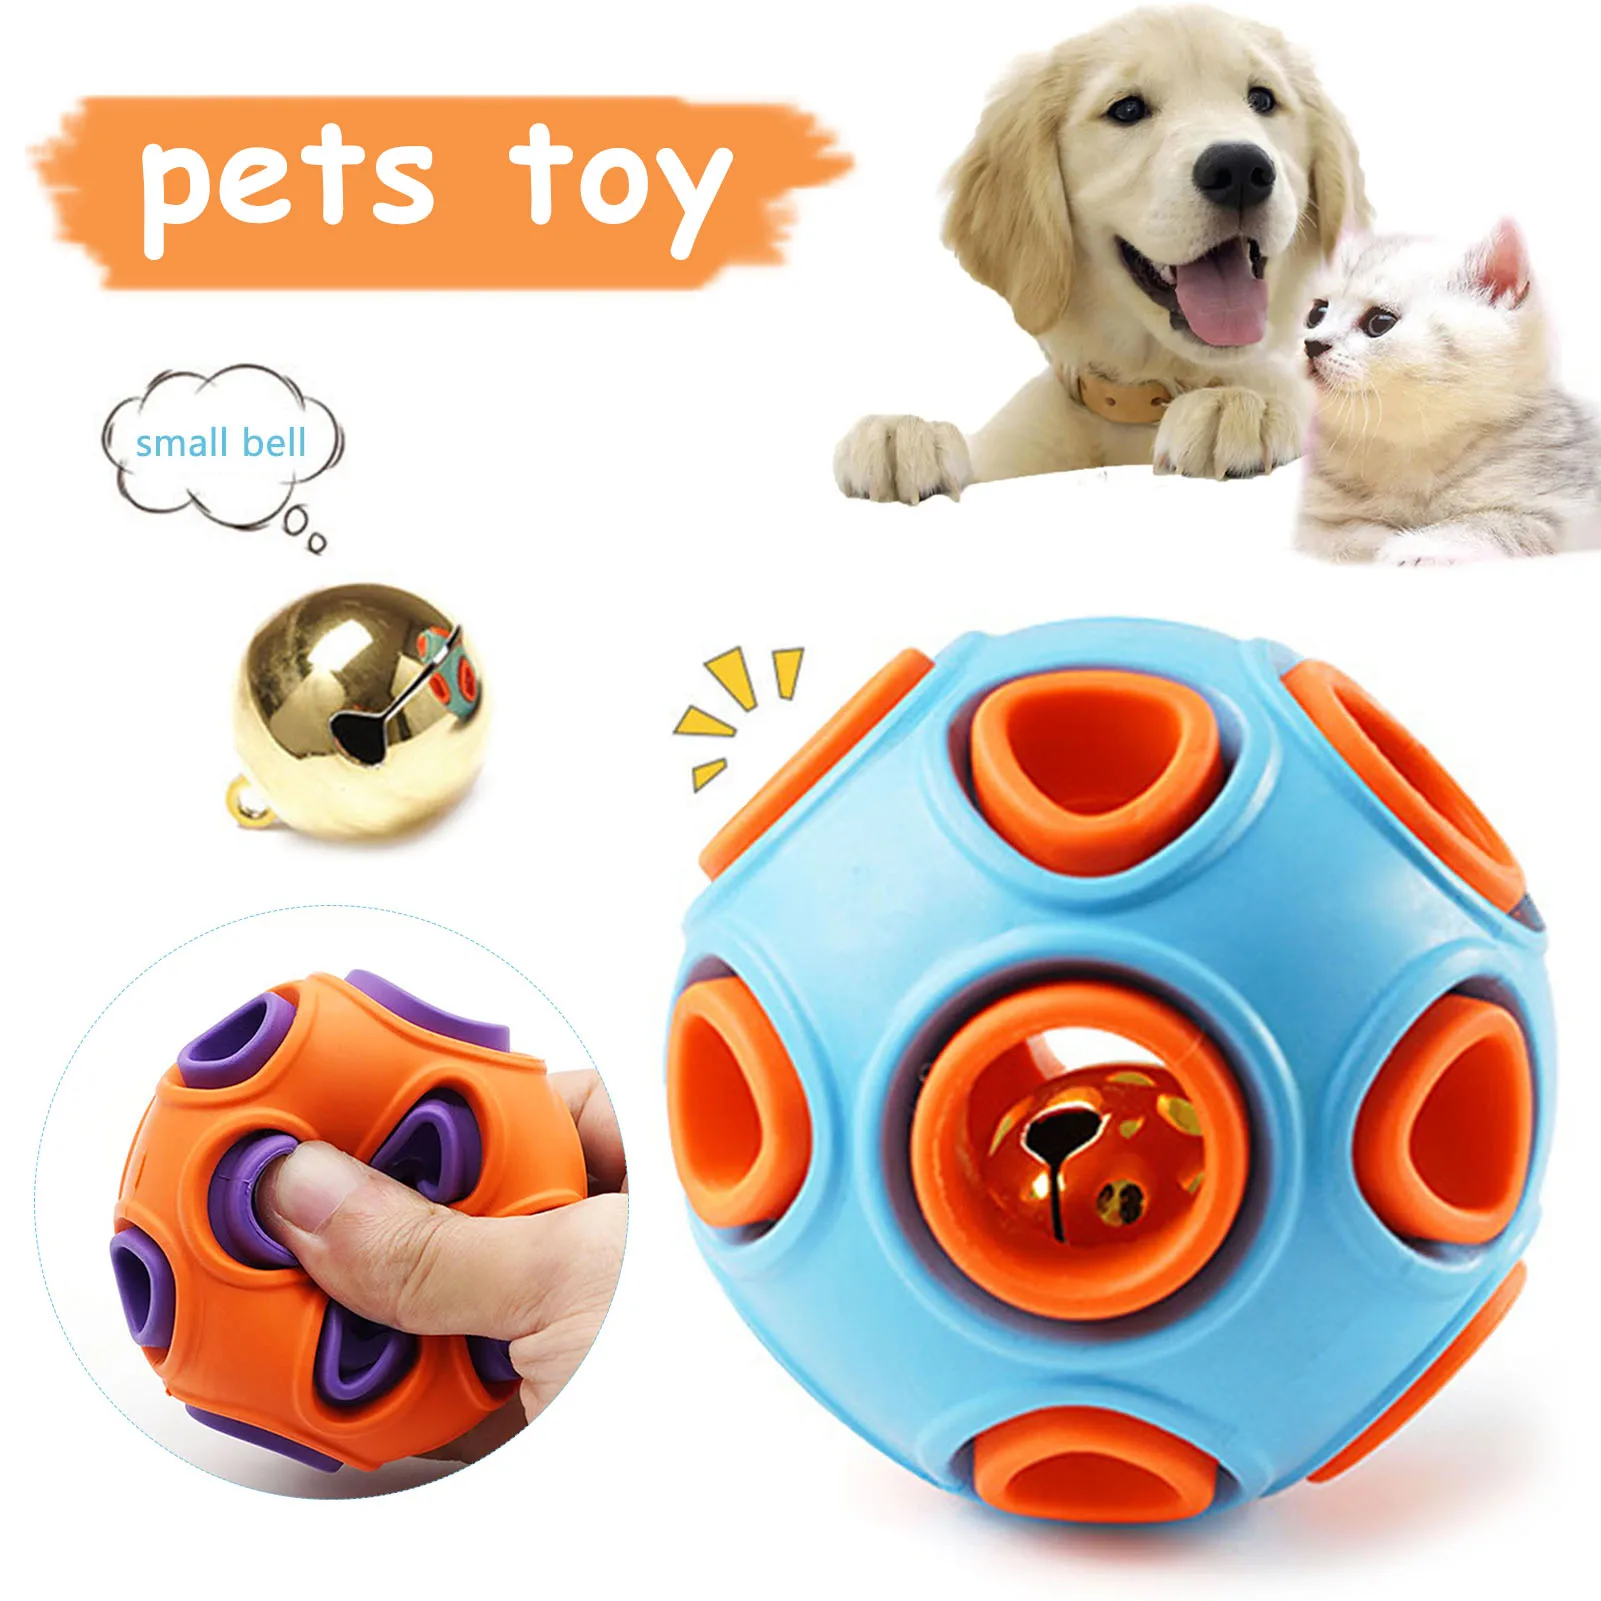 

Резиновый игрушечный мяч для собак, Интерактивная игрушка со встроенным звонком для средних и больших собак, игрушка для домашних животных,...